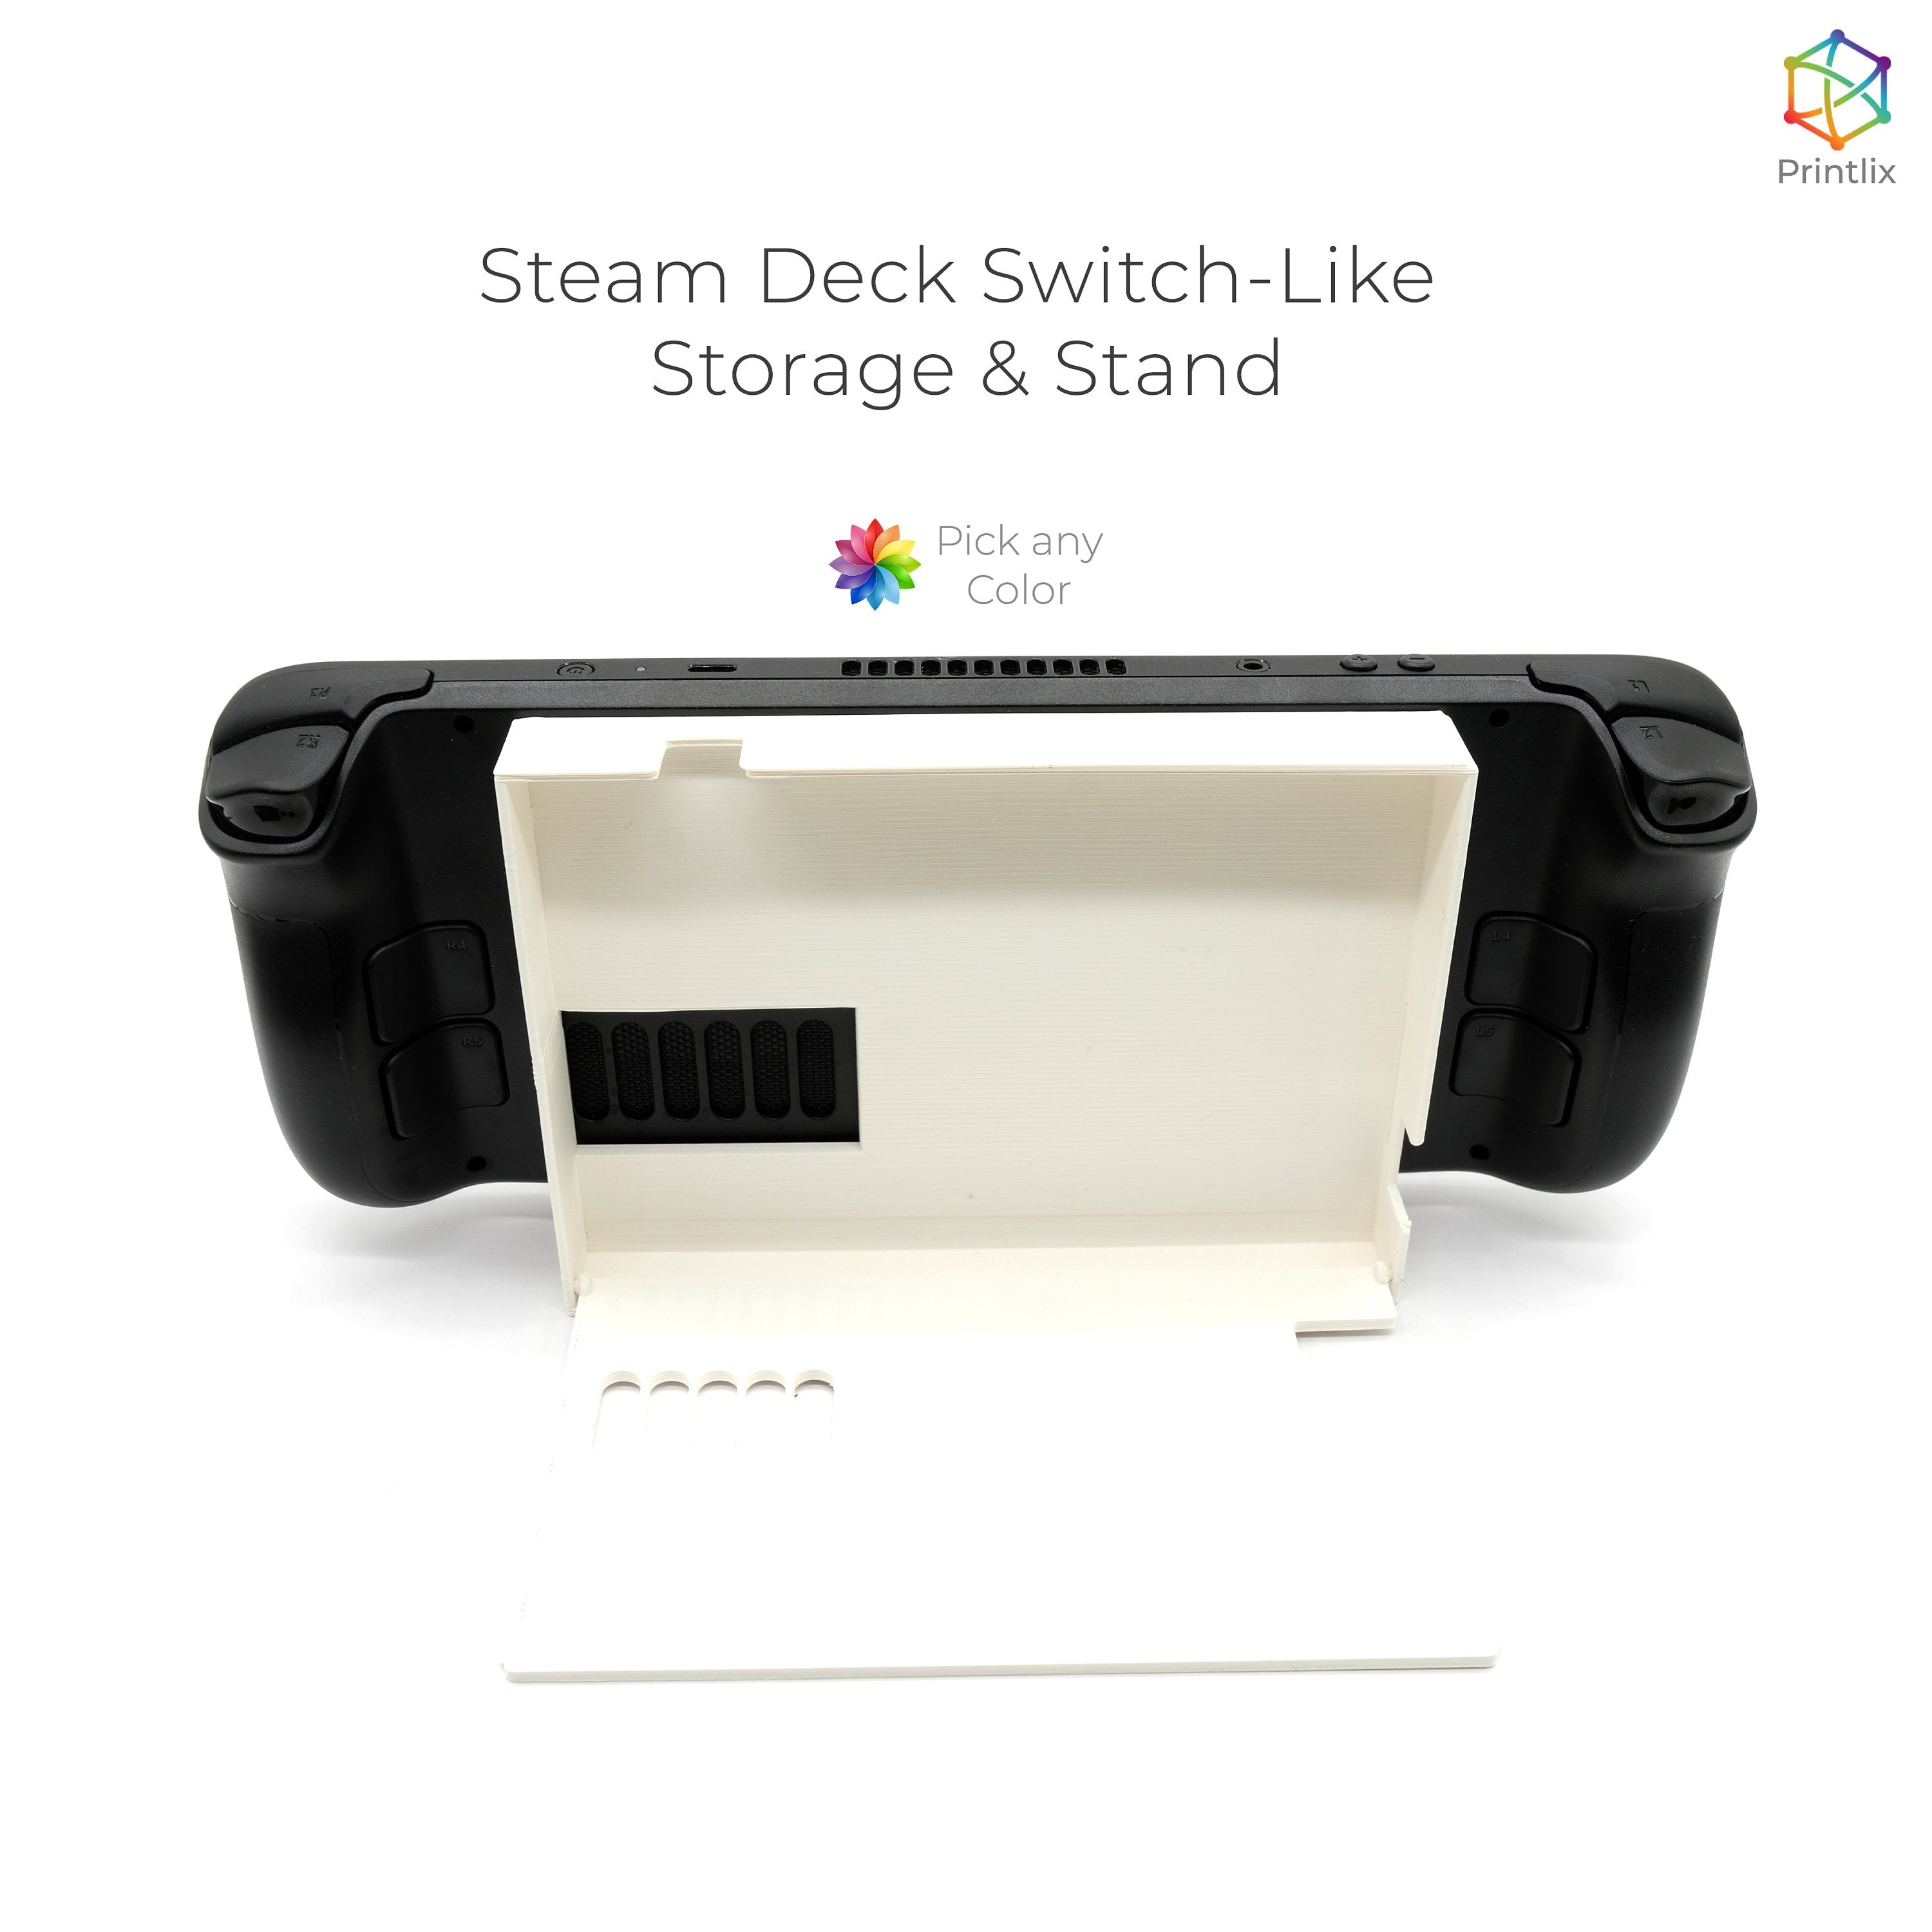 Steam Deck Switch-Life Storage & Stand